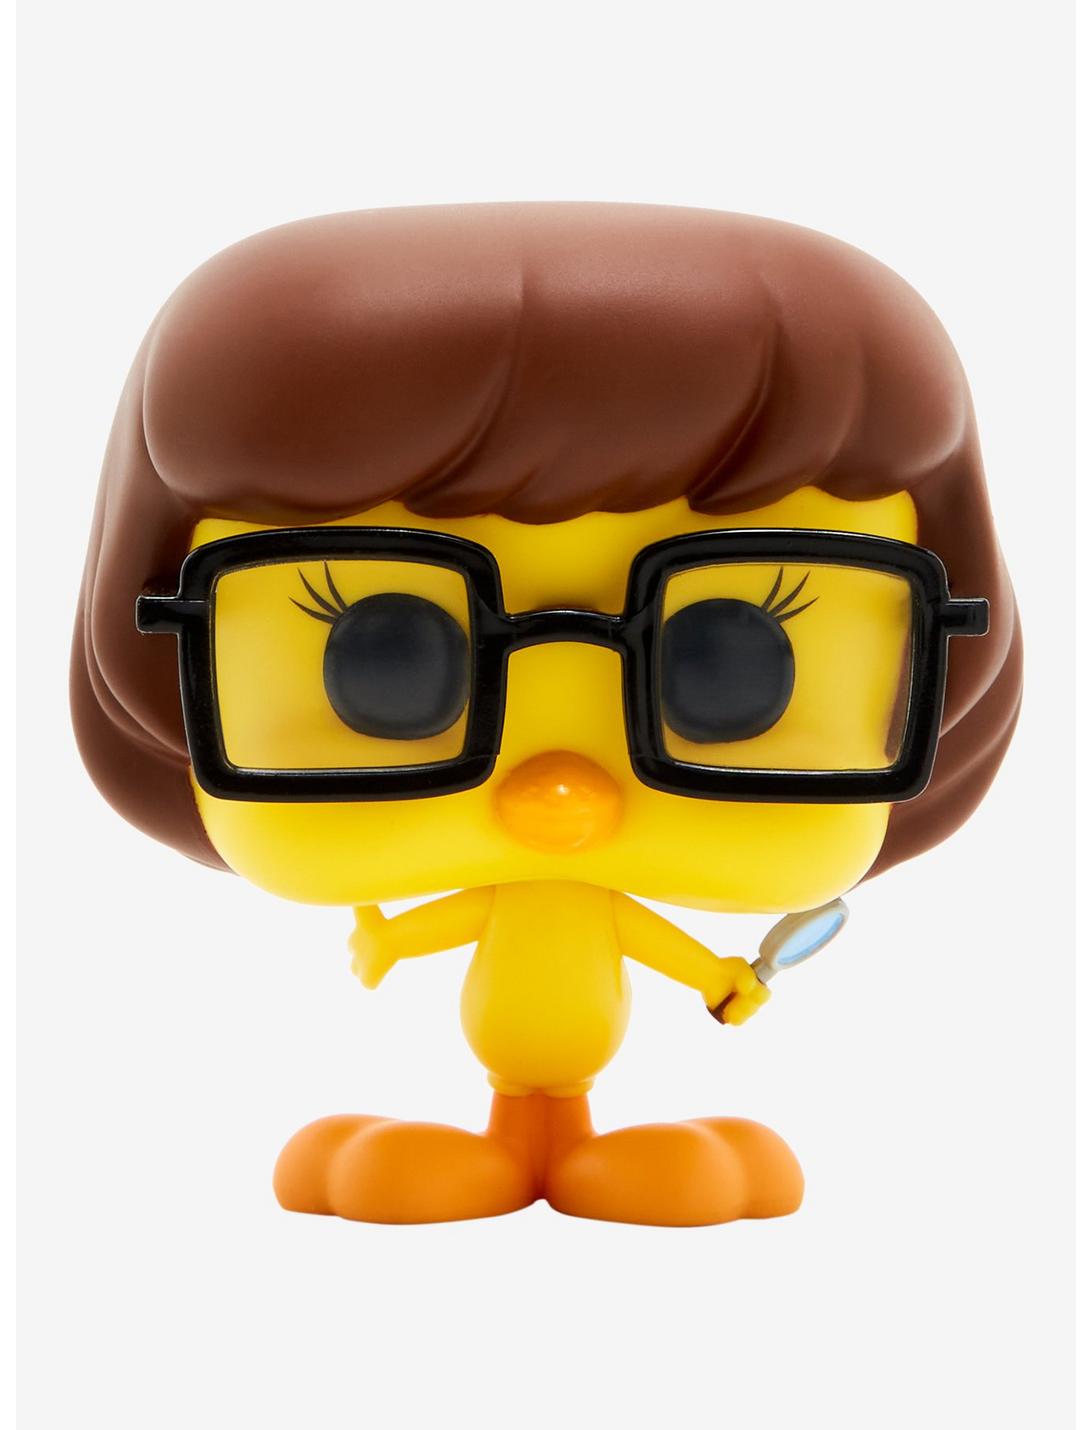 Funko Pop! Animation Warner Bros. 100 Tweety Bird as Velma Dinkley Vinyl  Figure